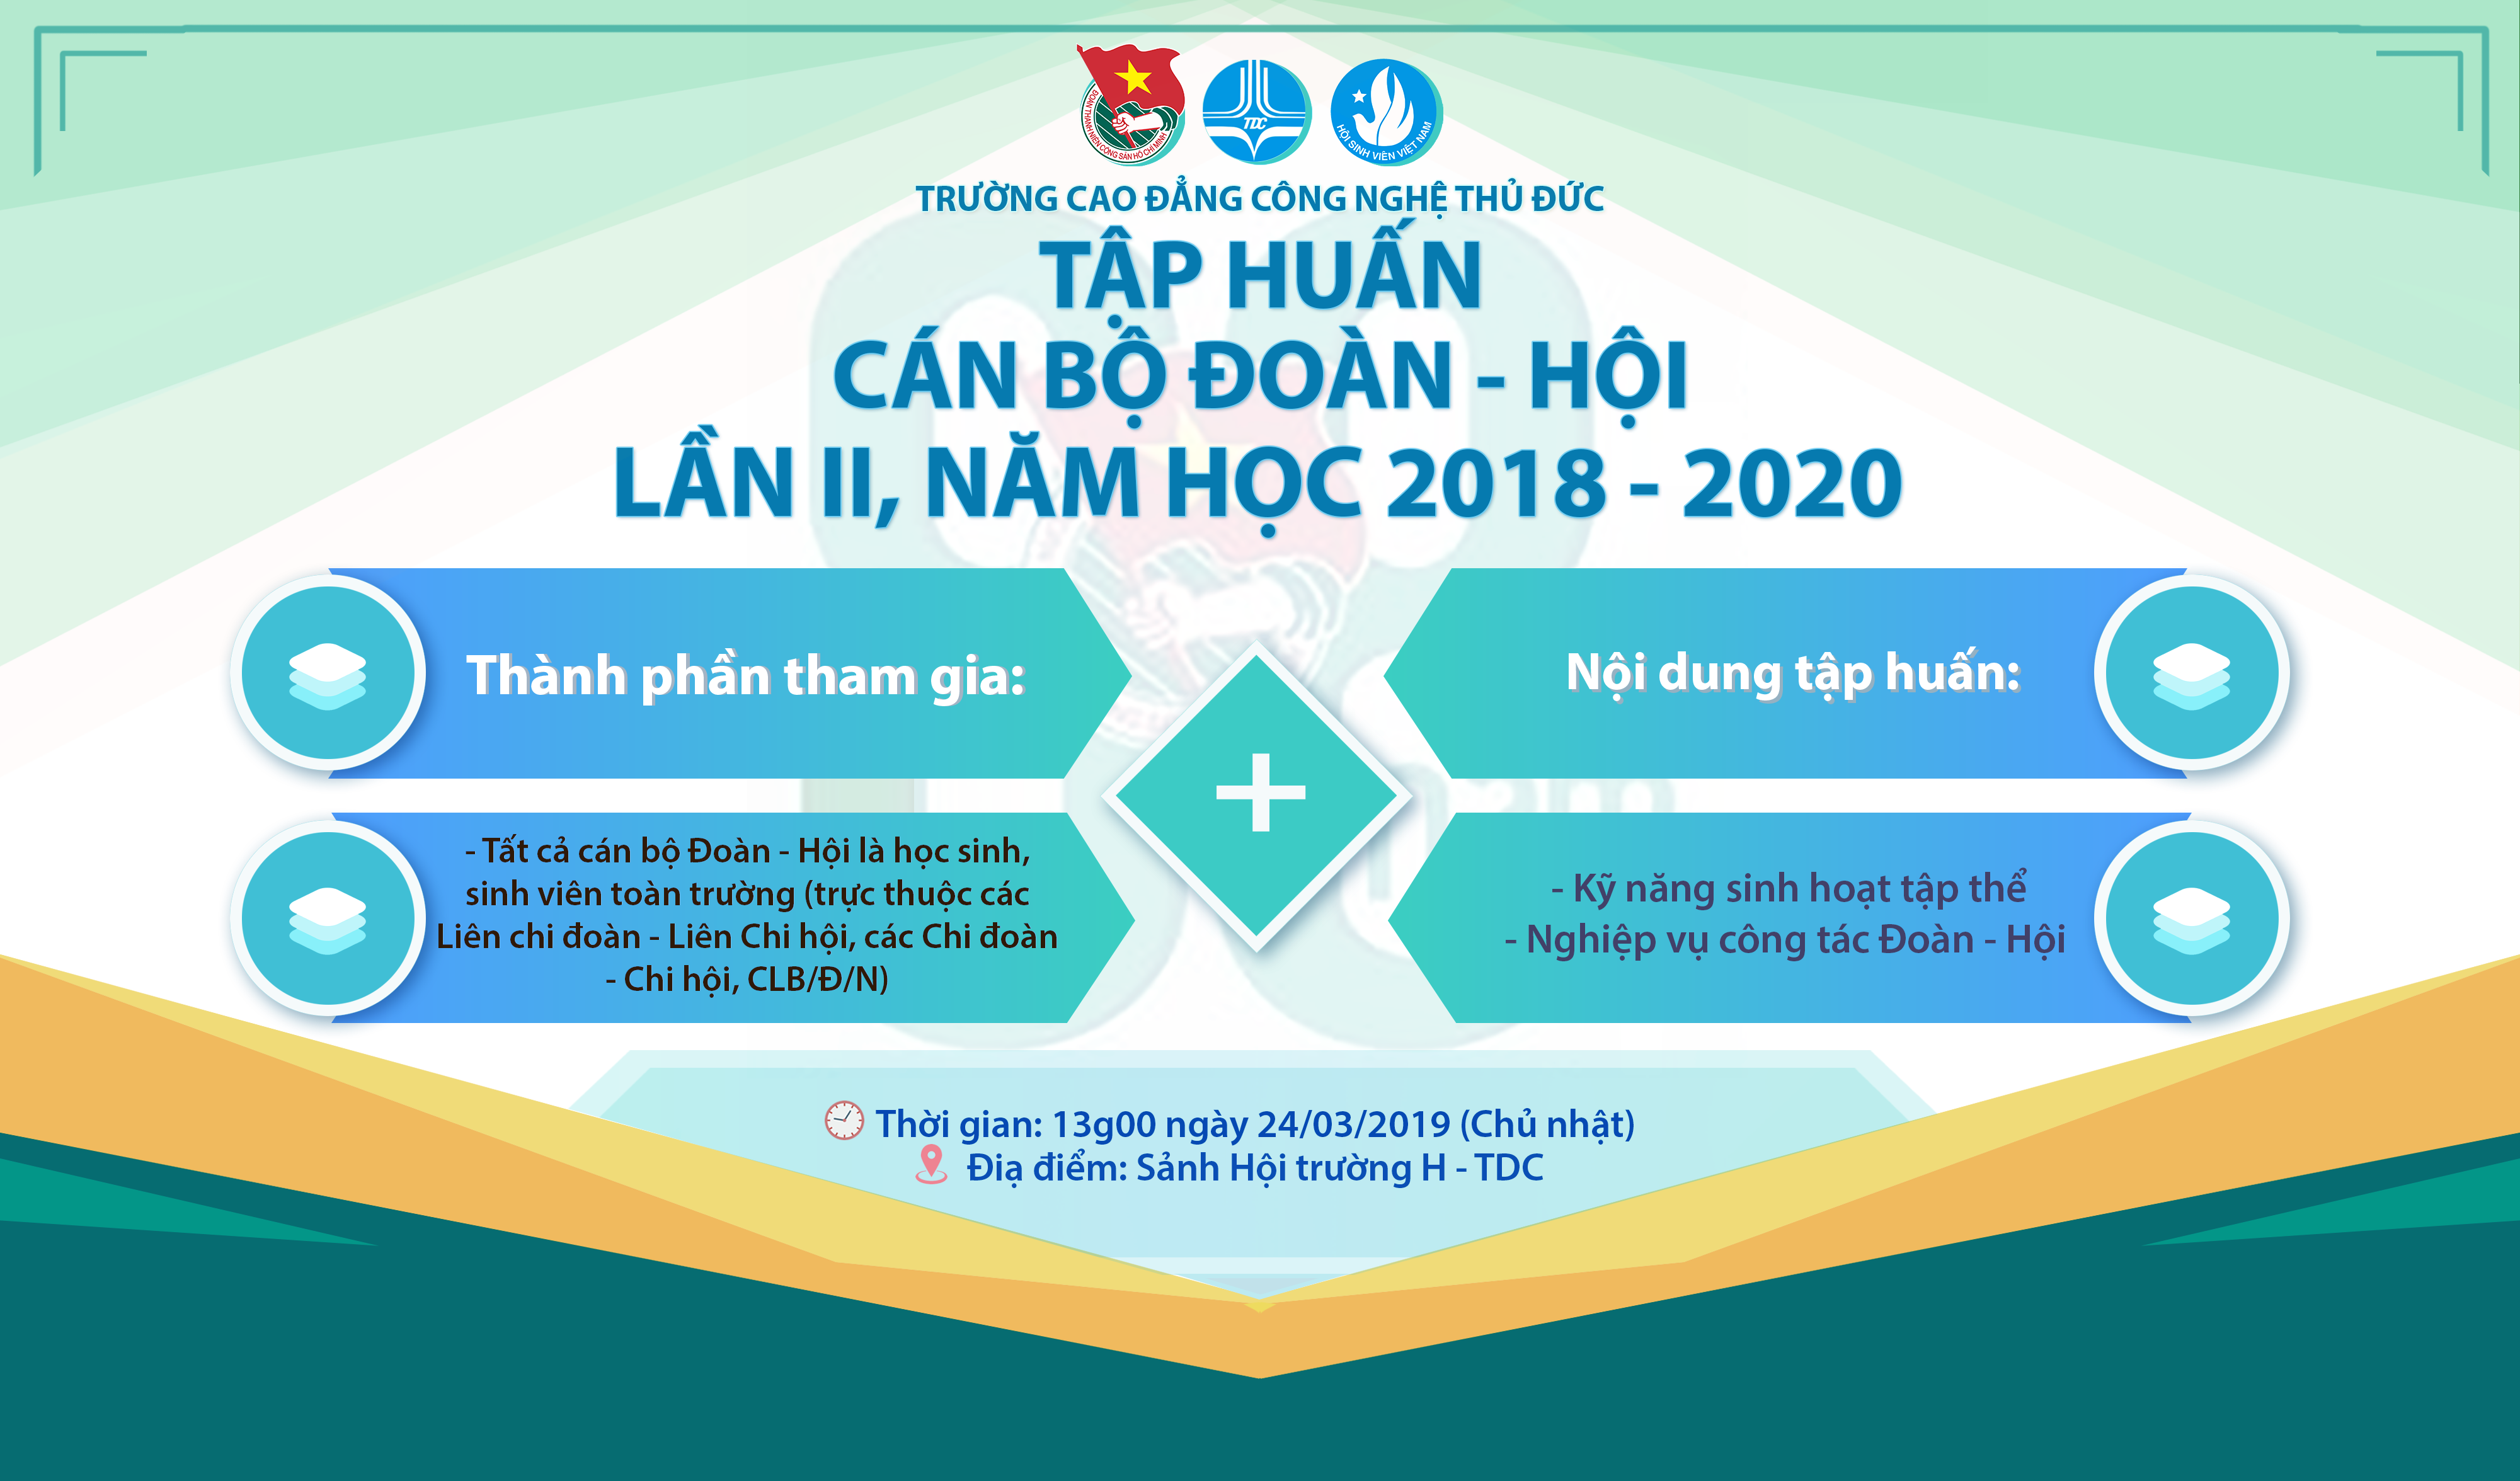 Tap huan Can bo Doan - Hoi 2019